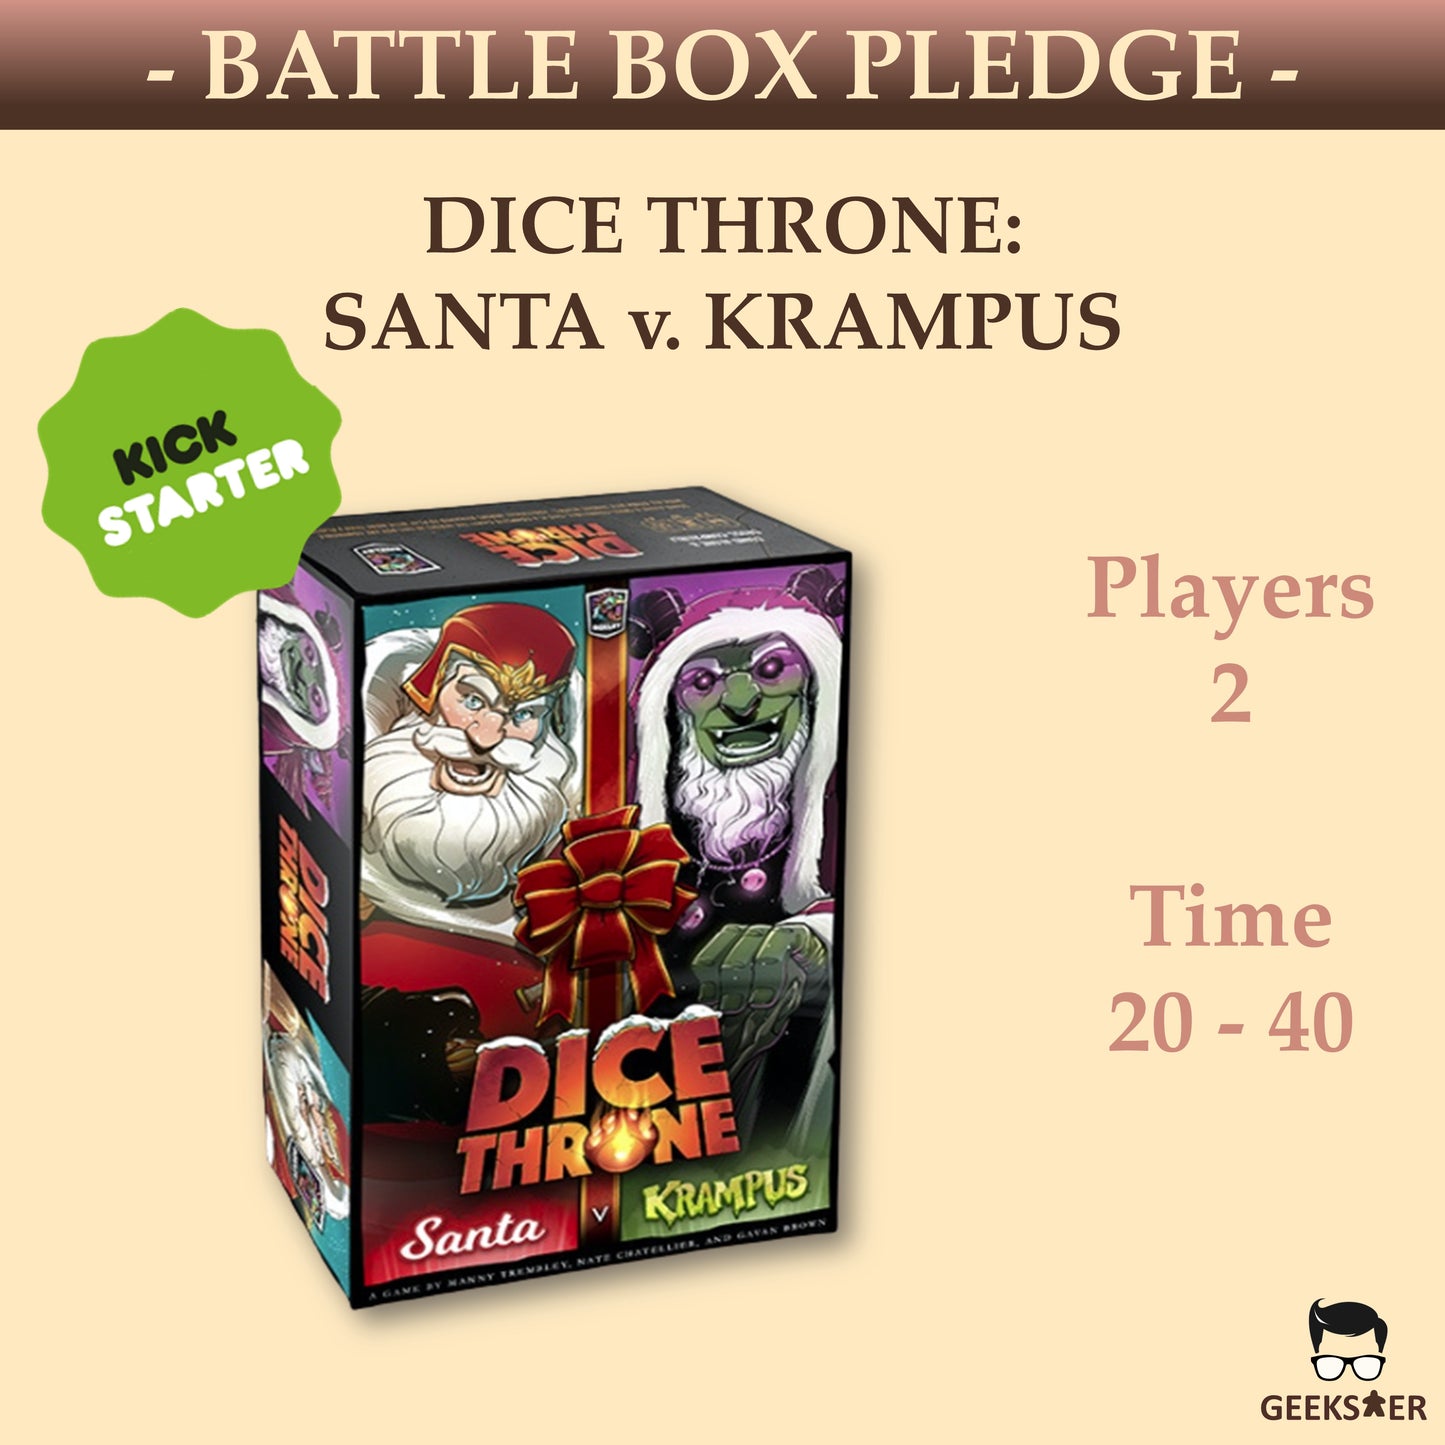 Dice Throne: Santa v. Krampus (Battle Box Pledge)